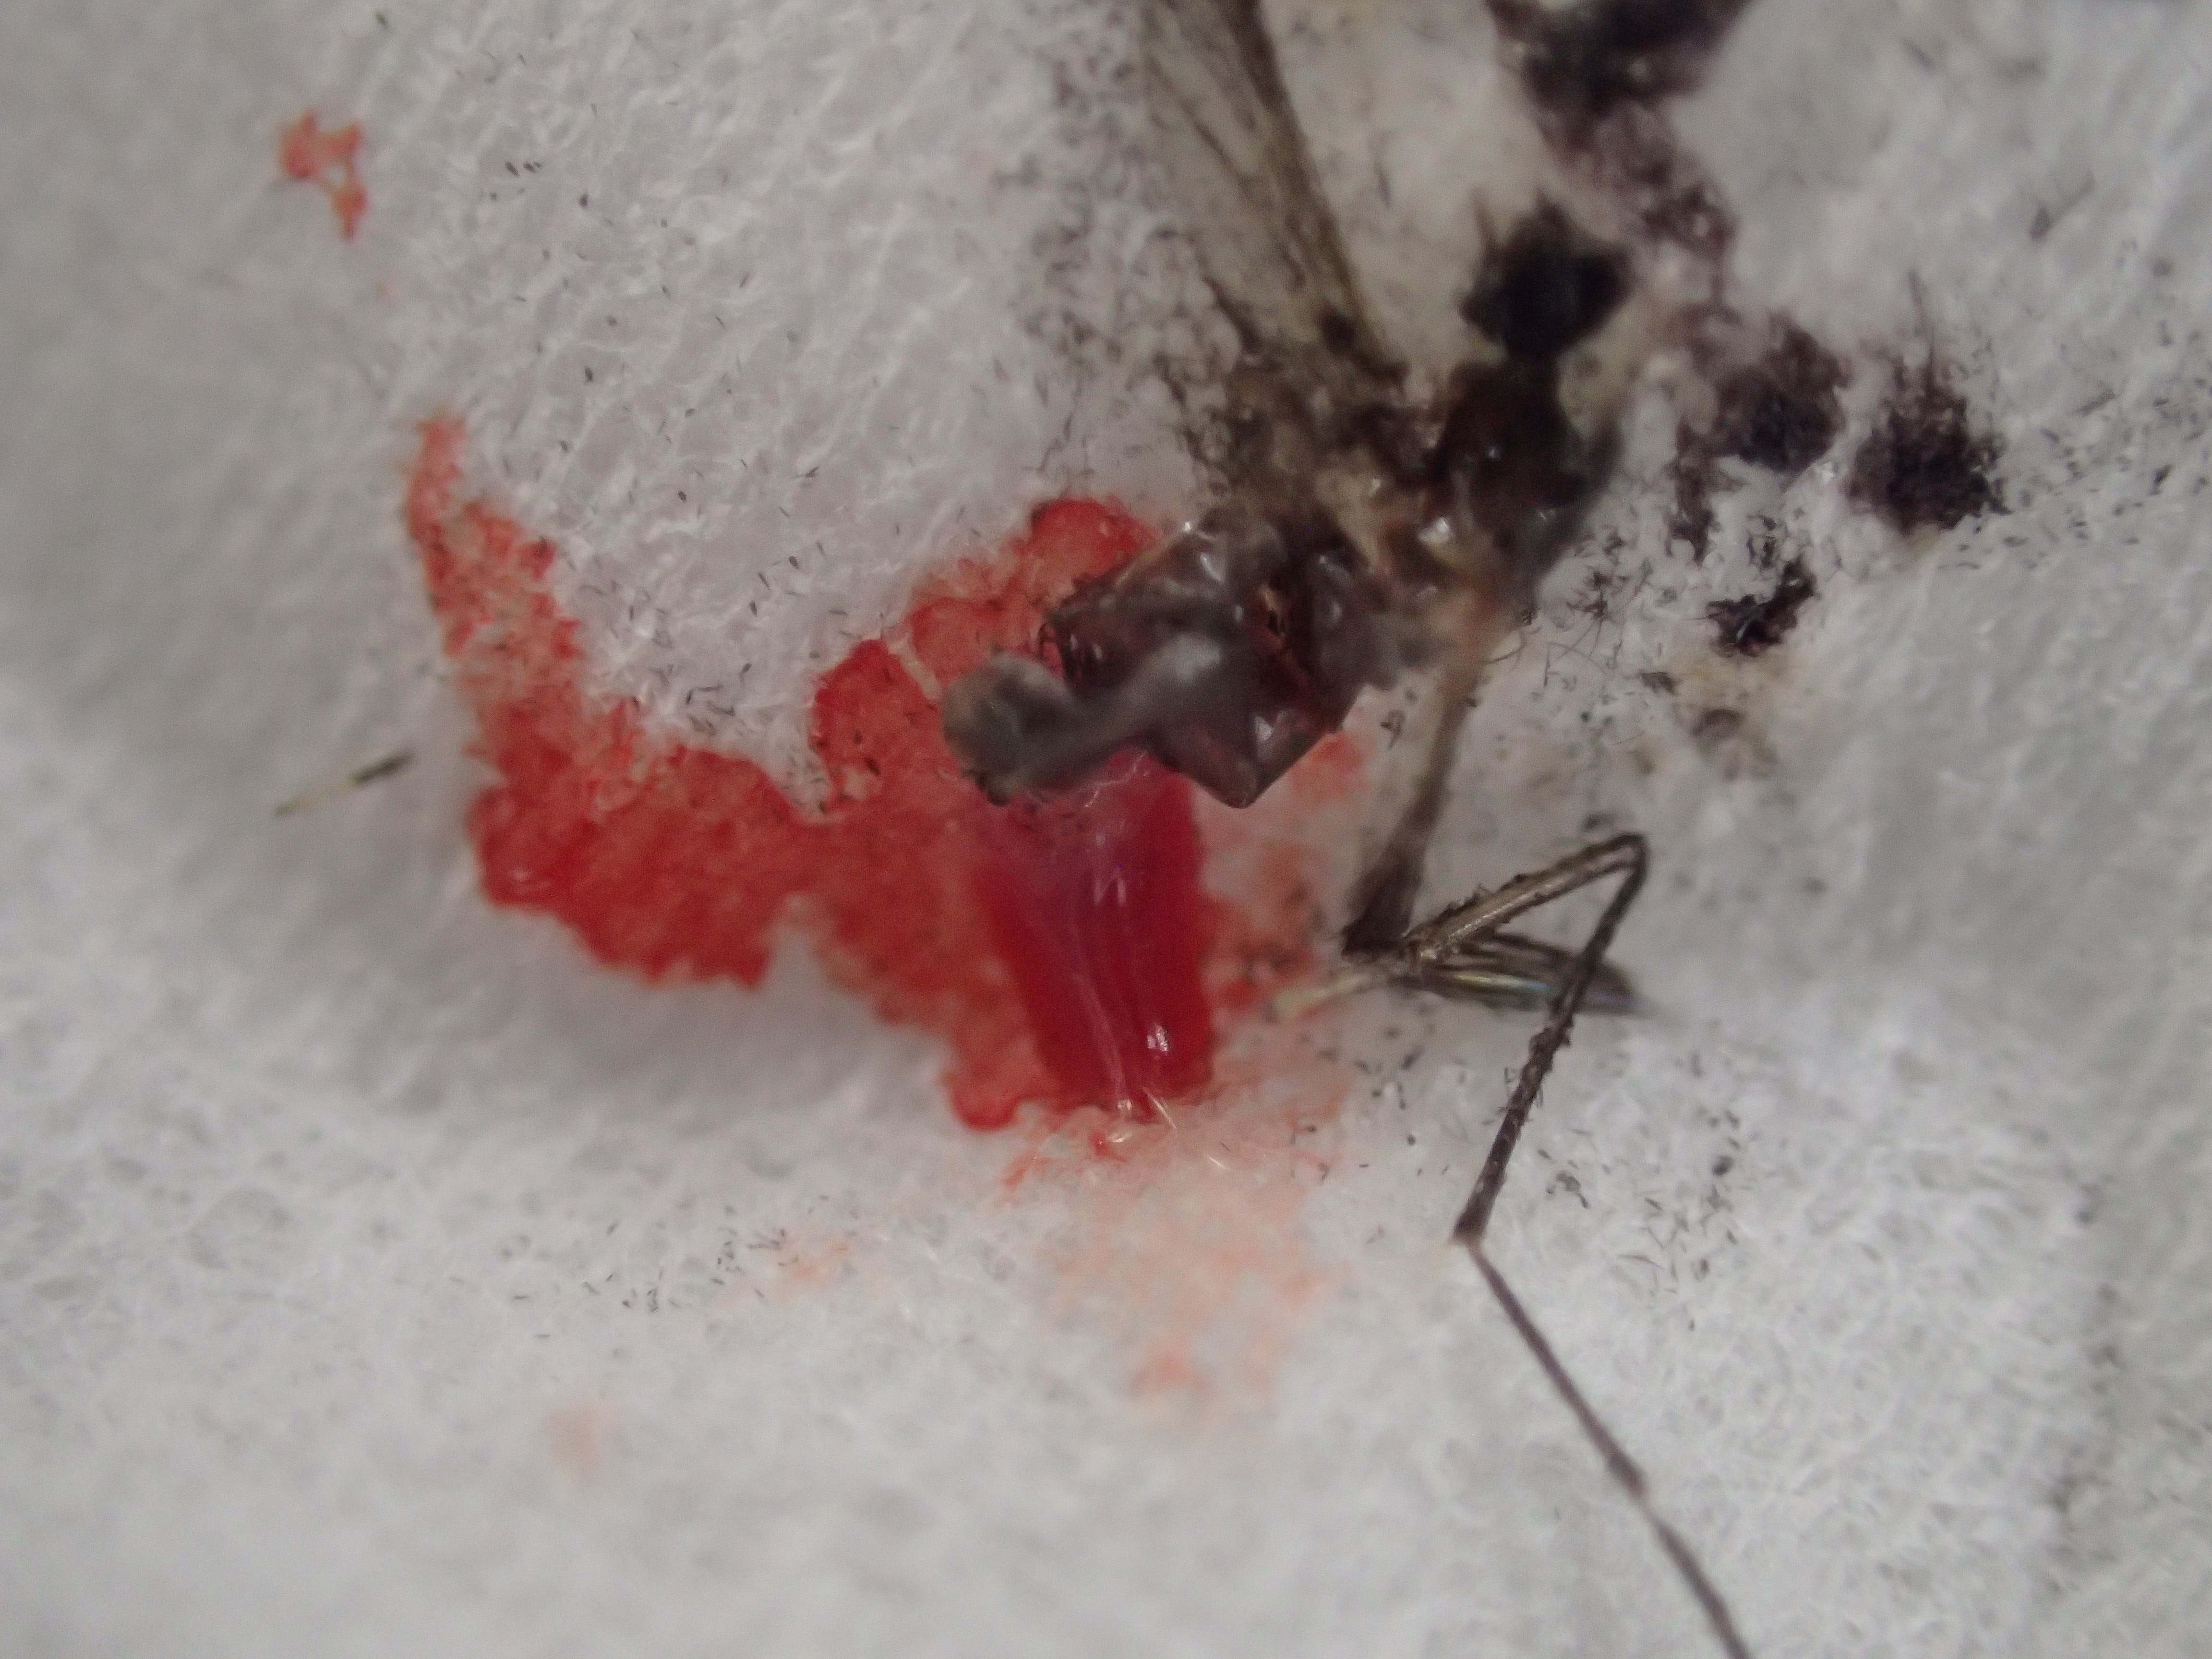 血を吸った蚊をティッシュペーパーで駆除して赤いシミが広がった様子